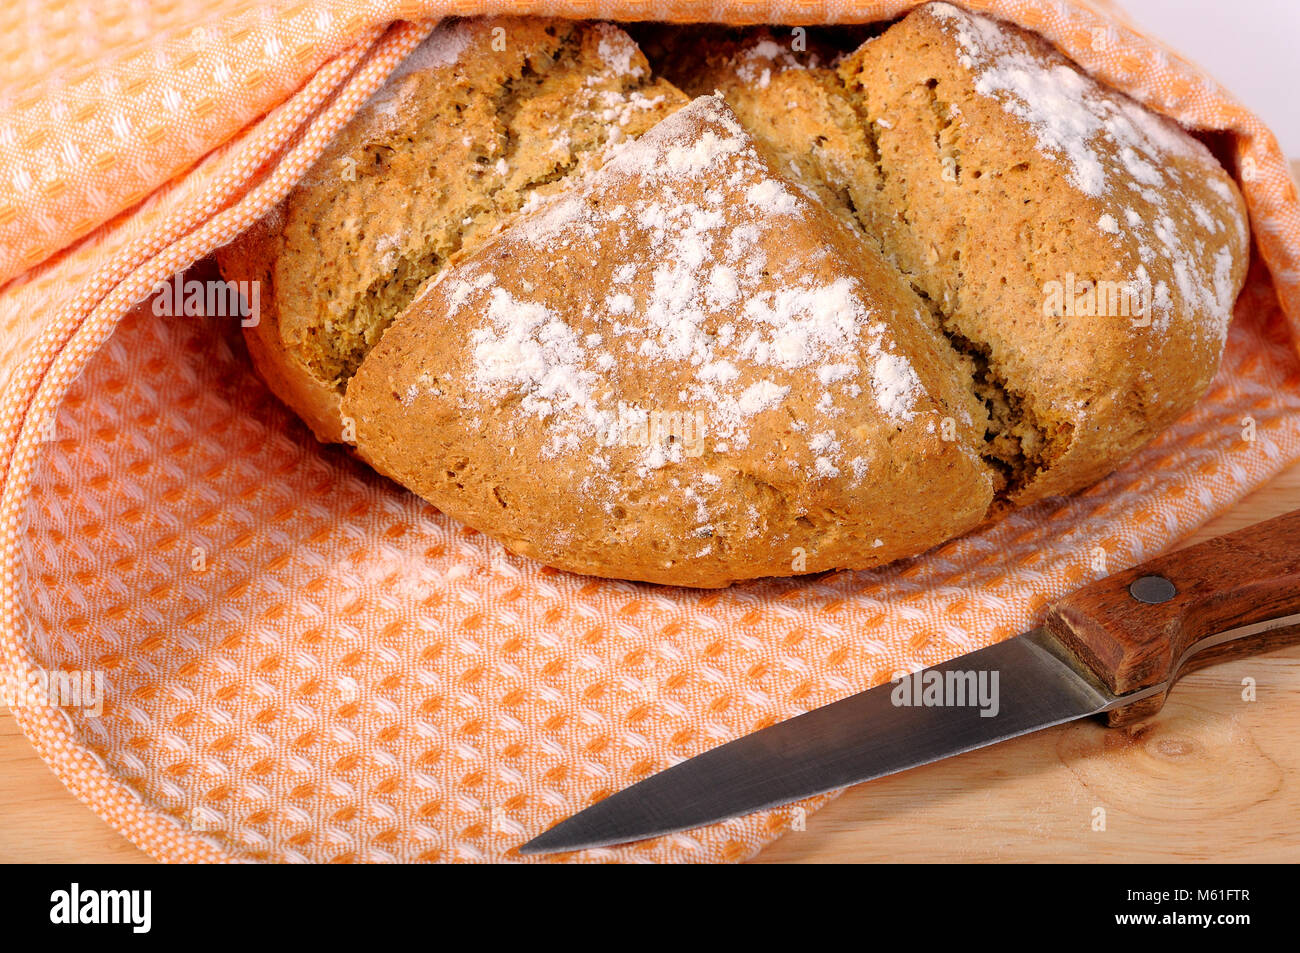 Frisch gebackenes Brot in ein Geschirrtuch und ein Messer Stockfotografie -  Alamy